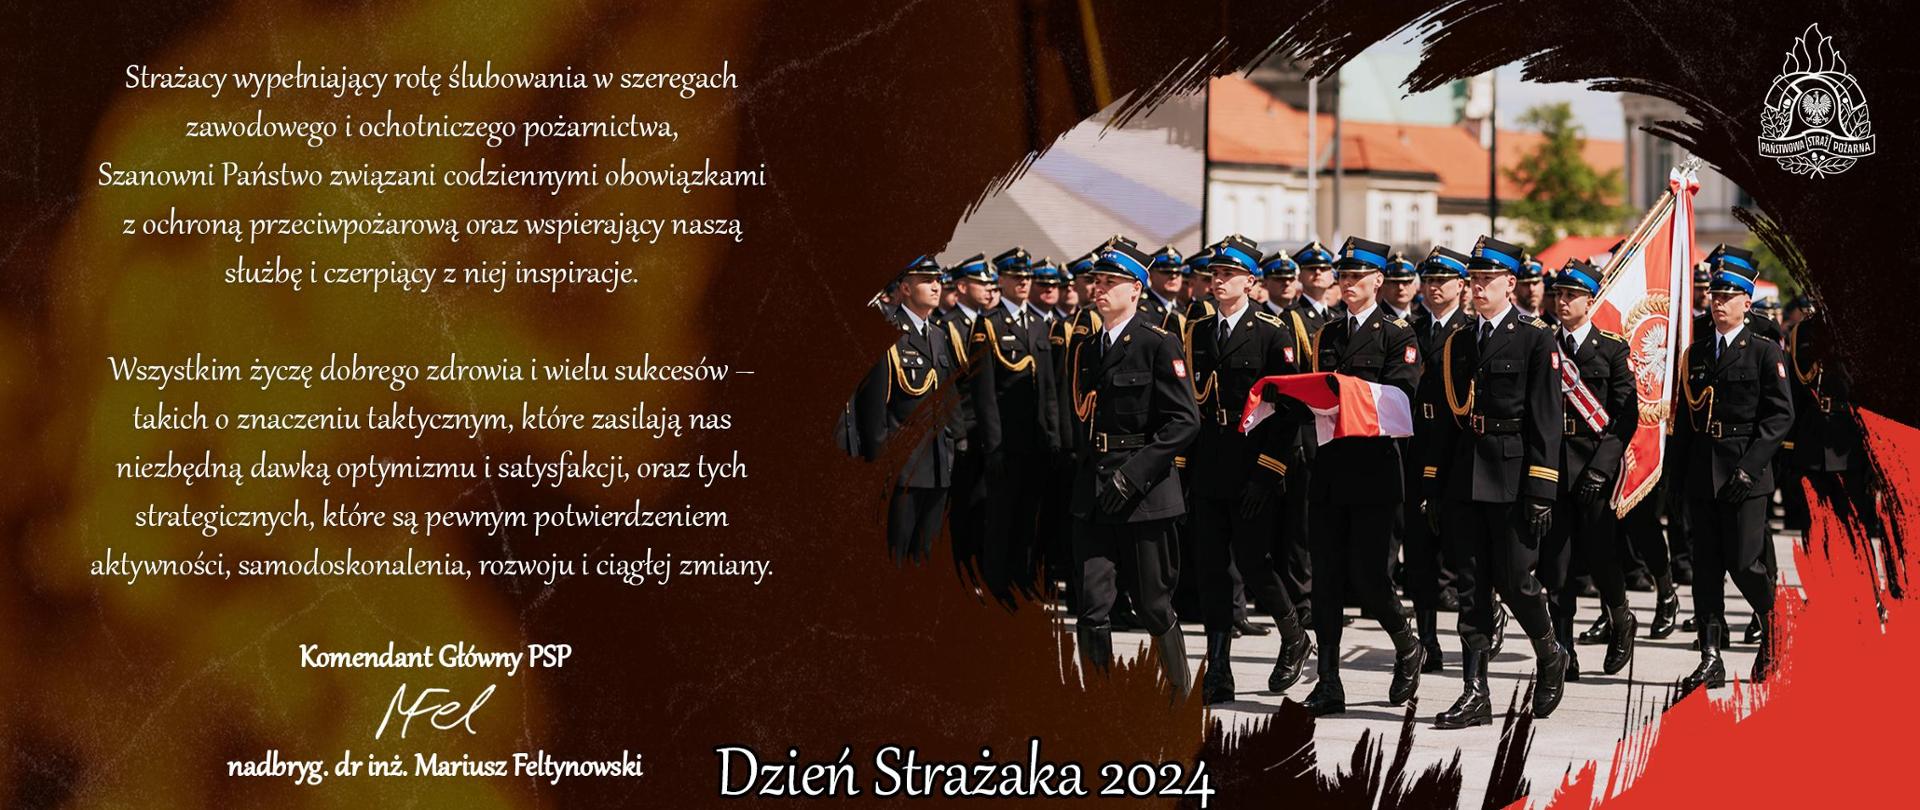 Baner z życzeniami Komendanta Głównego nadbrygadiera Mariusza Feltynowskiego z okazji Dnia Strażaka.